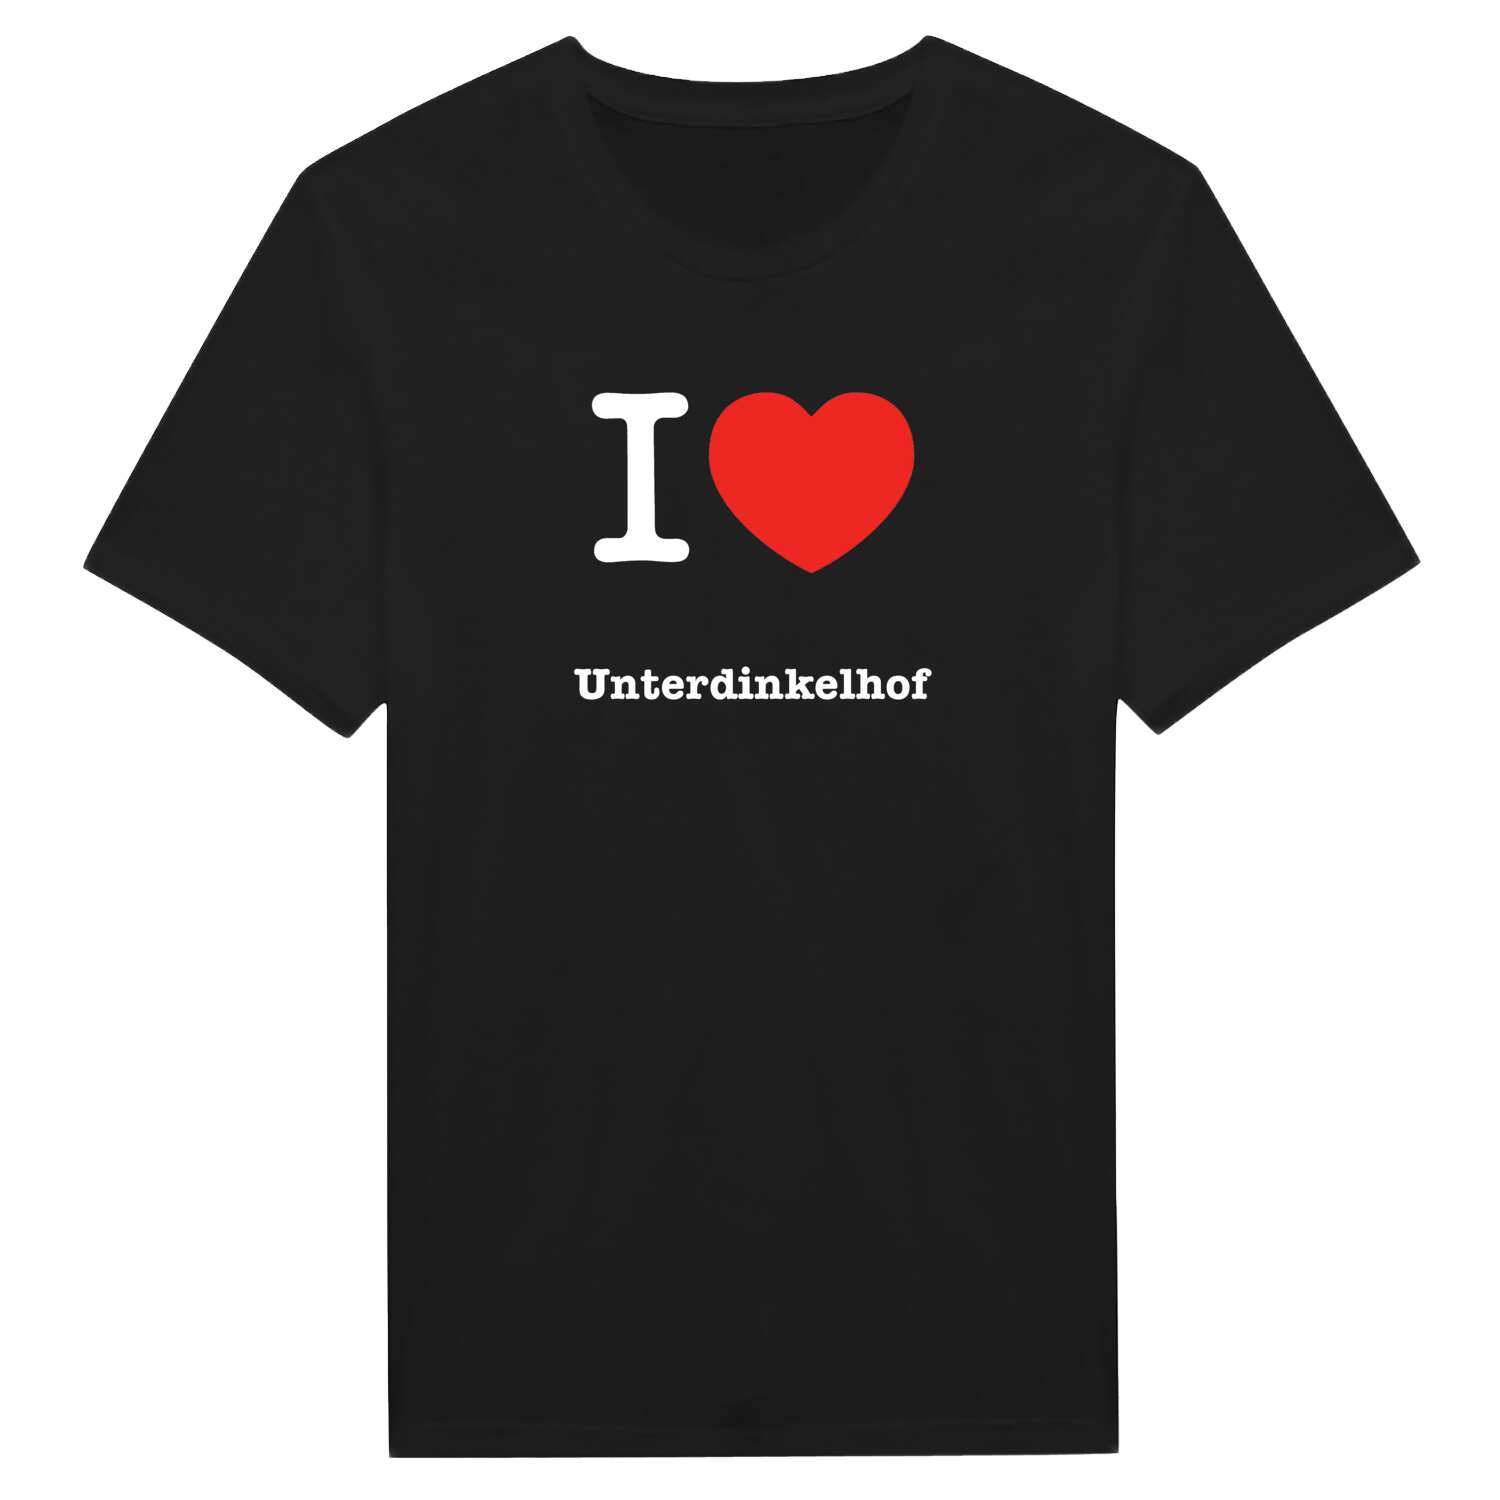 Unterdinkelhof T-Shirt »I love«